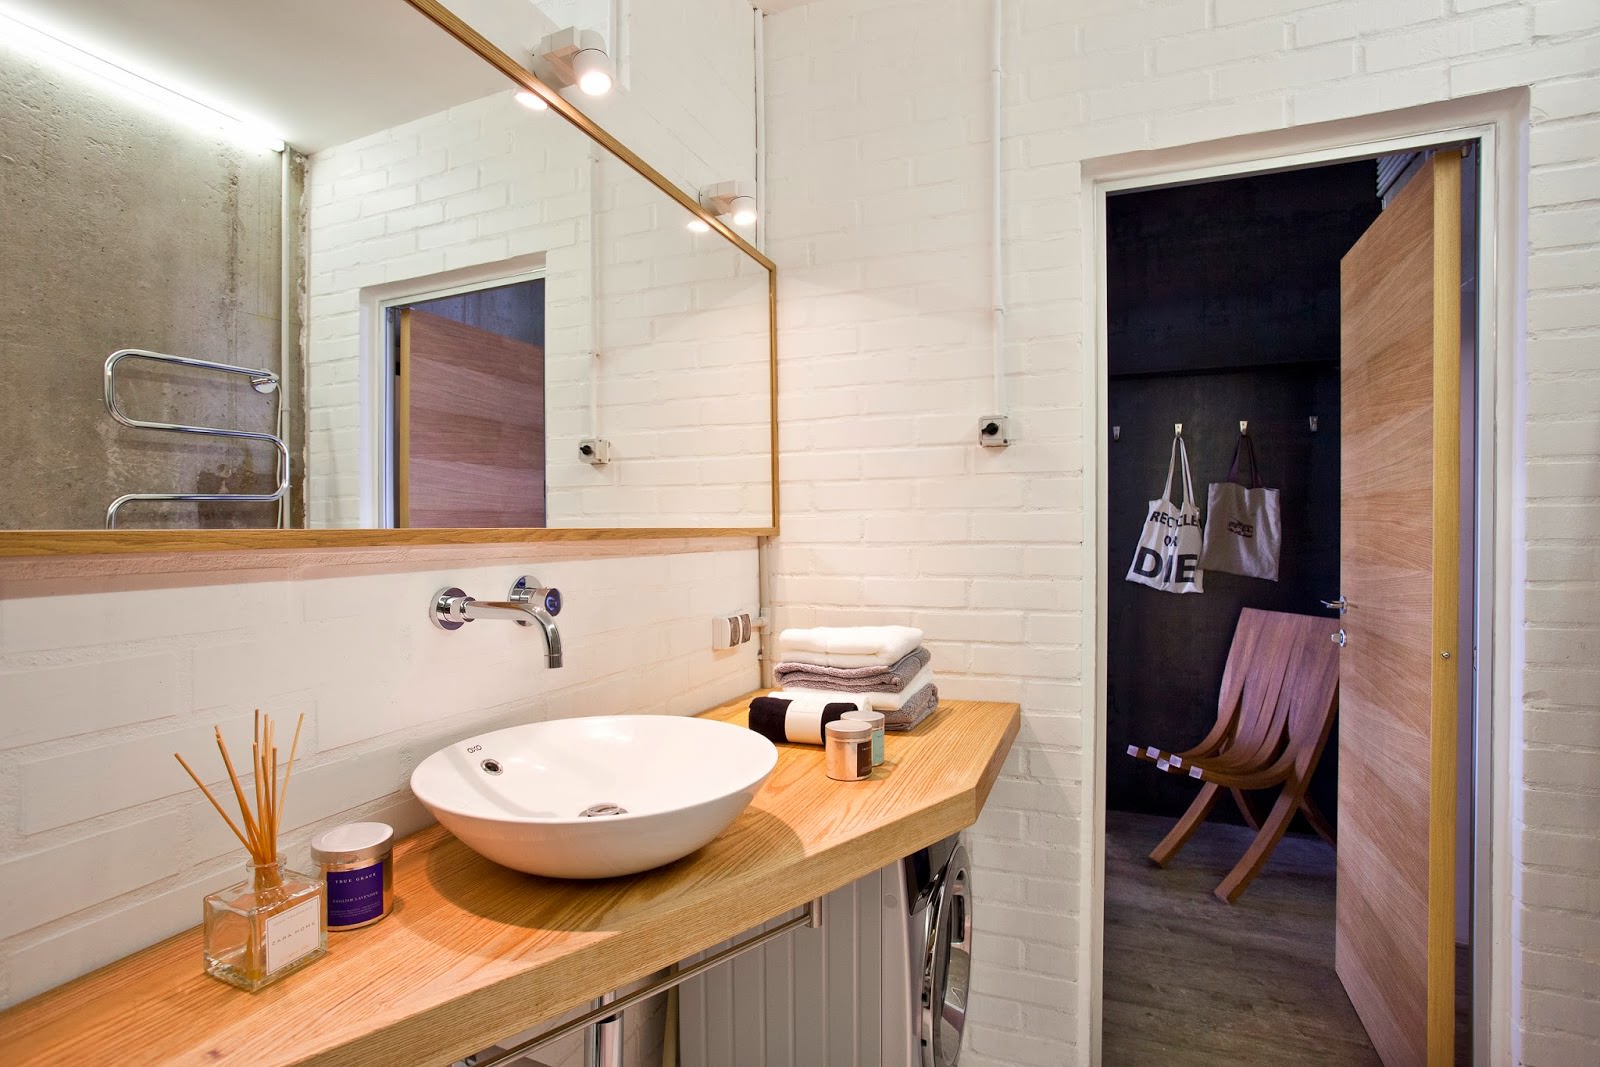 Beton în interiorul unui apartament creativ: baie